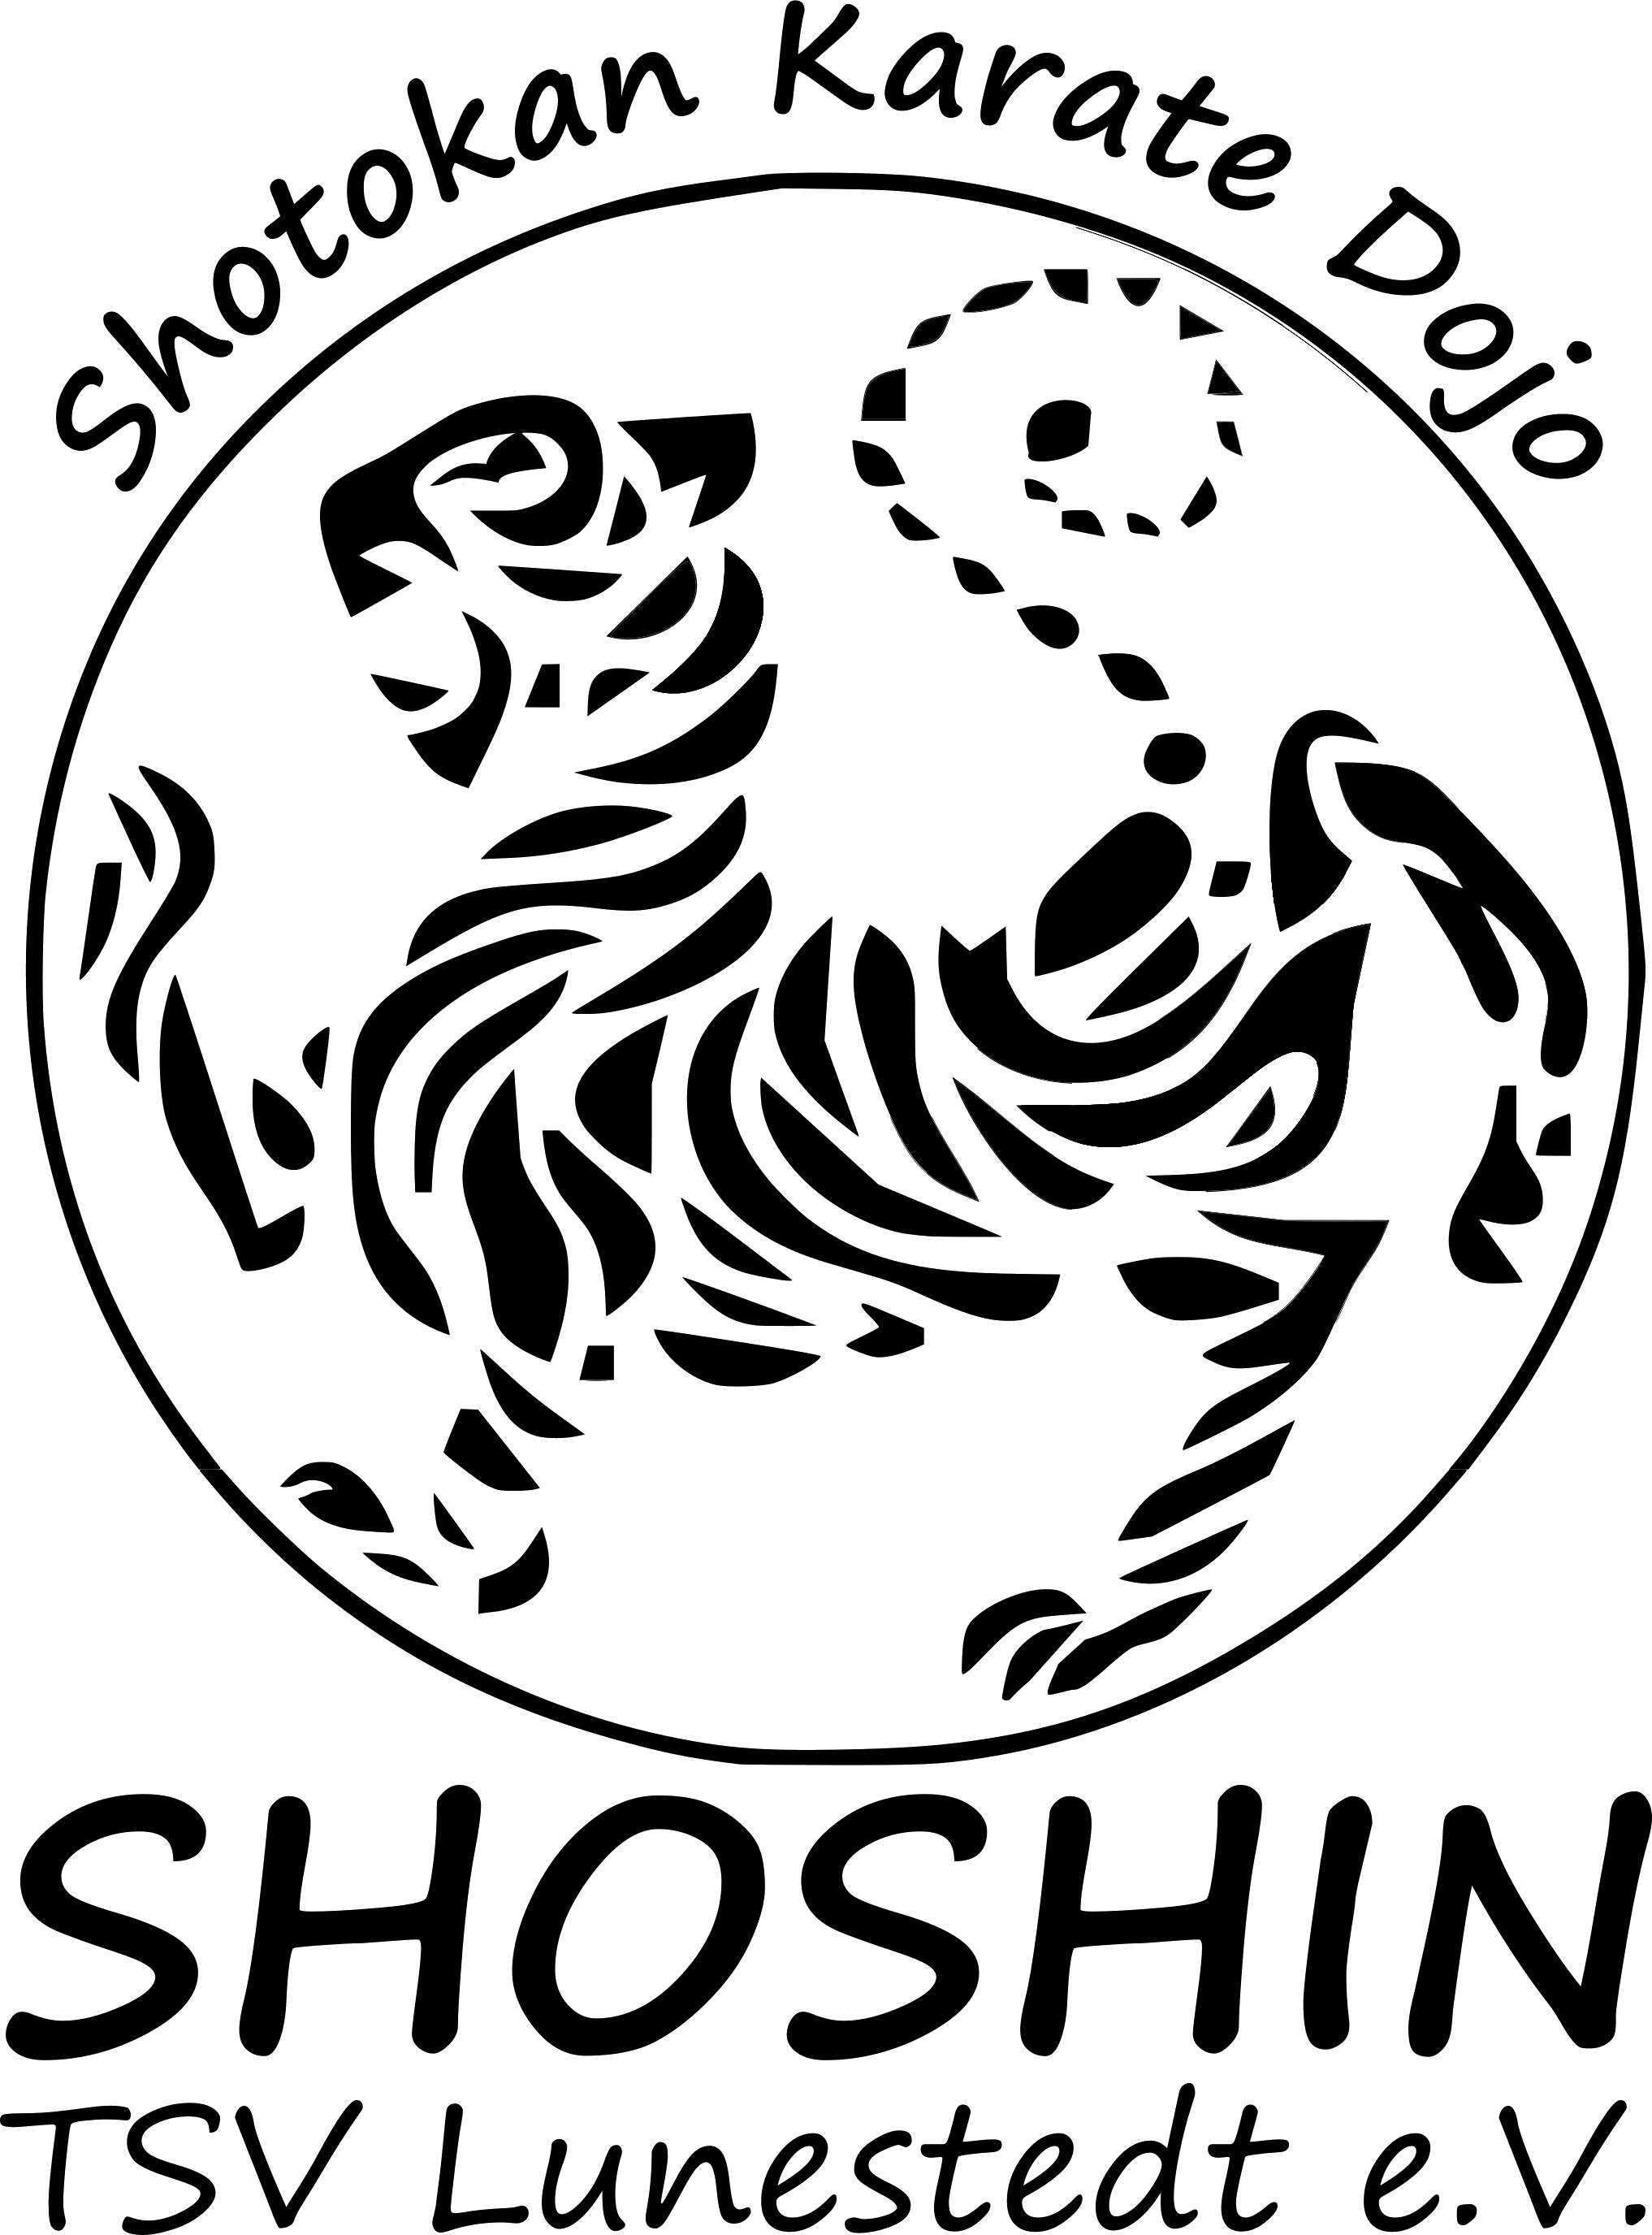 Shoshin